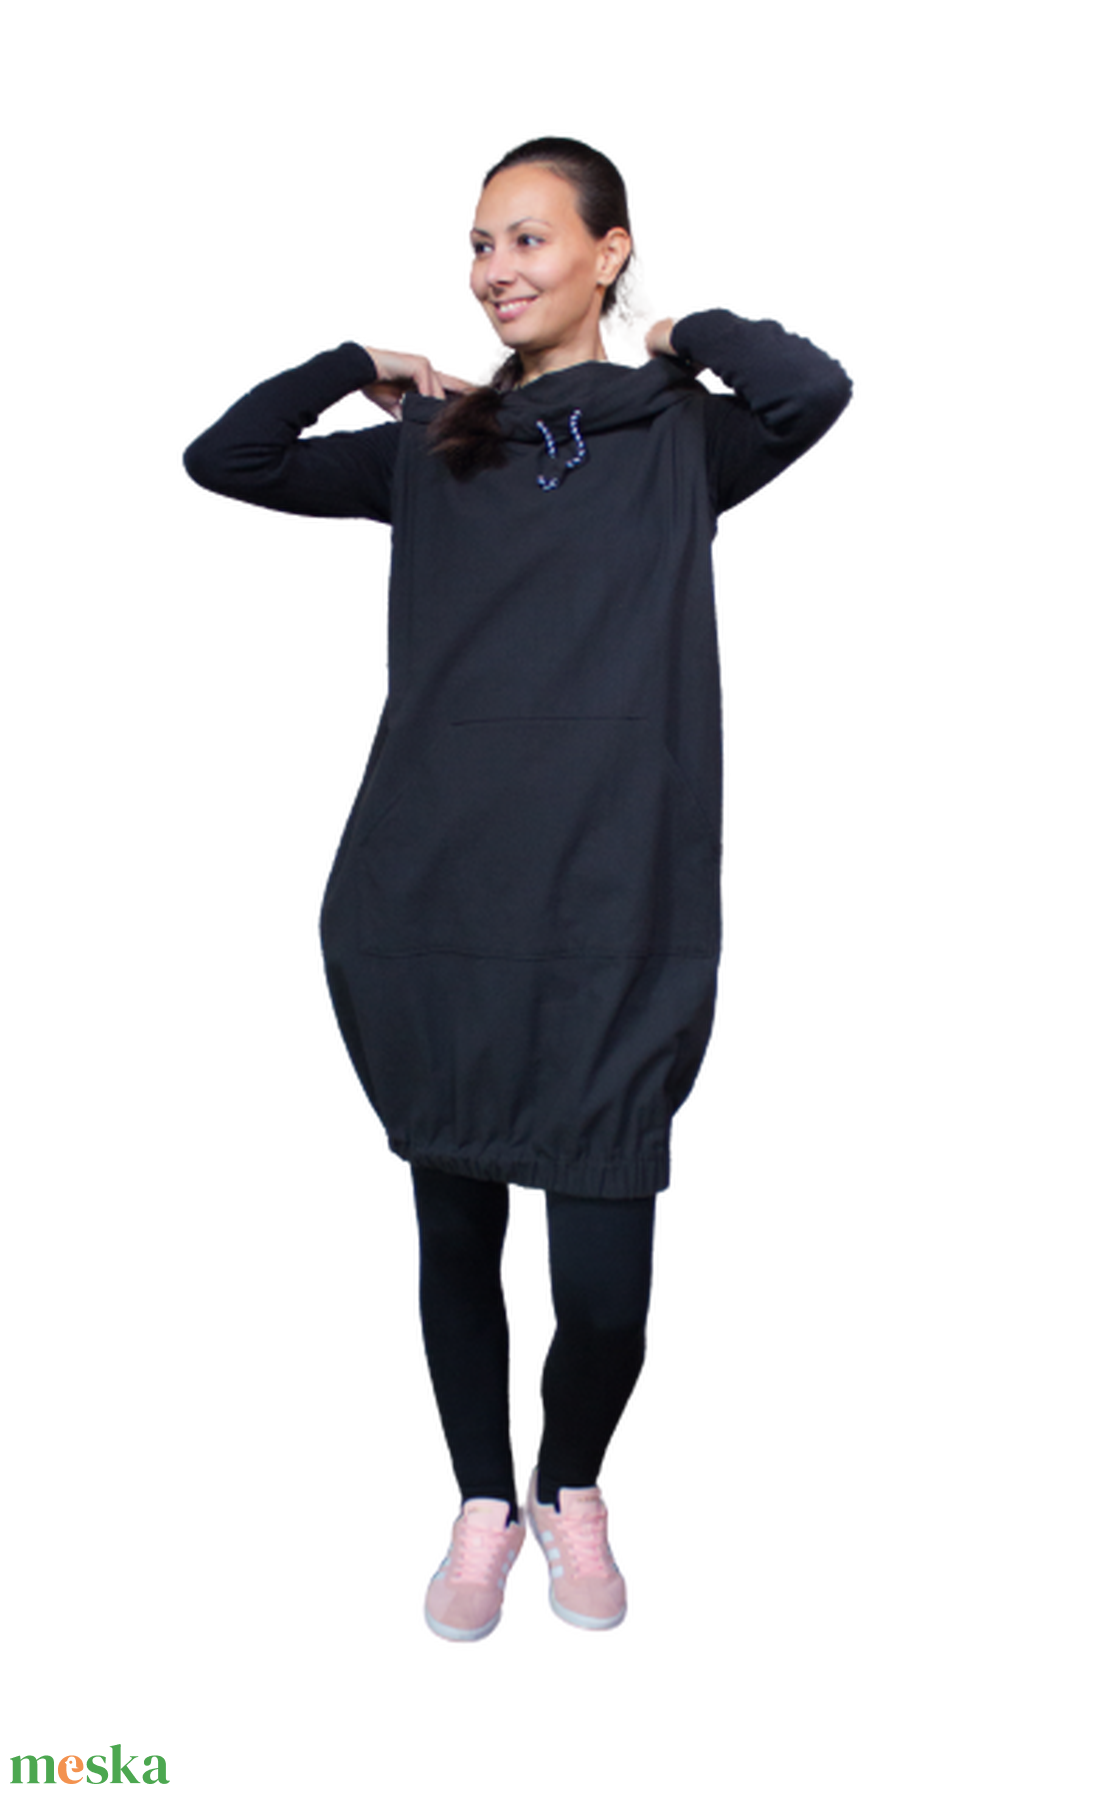 Black Padme ruha - kapucnis, kenguruzsebes ujjatlan ruha, alja gumírozott - ruha & divat - női ruha - ruha - Meska.hu